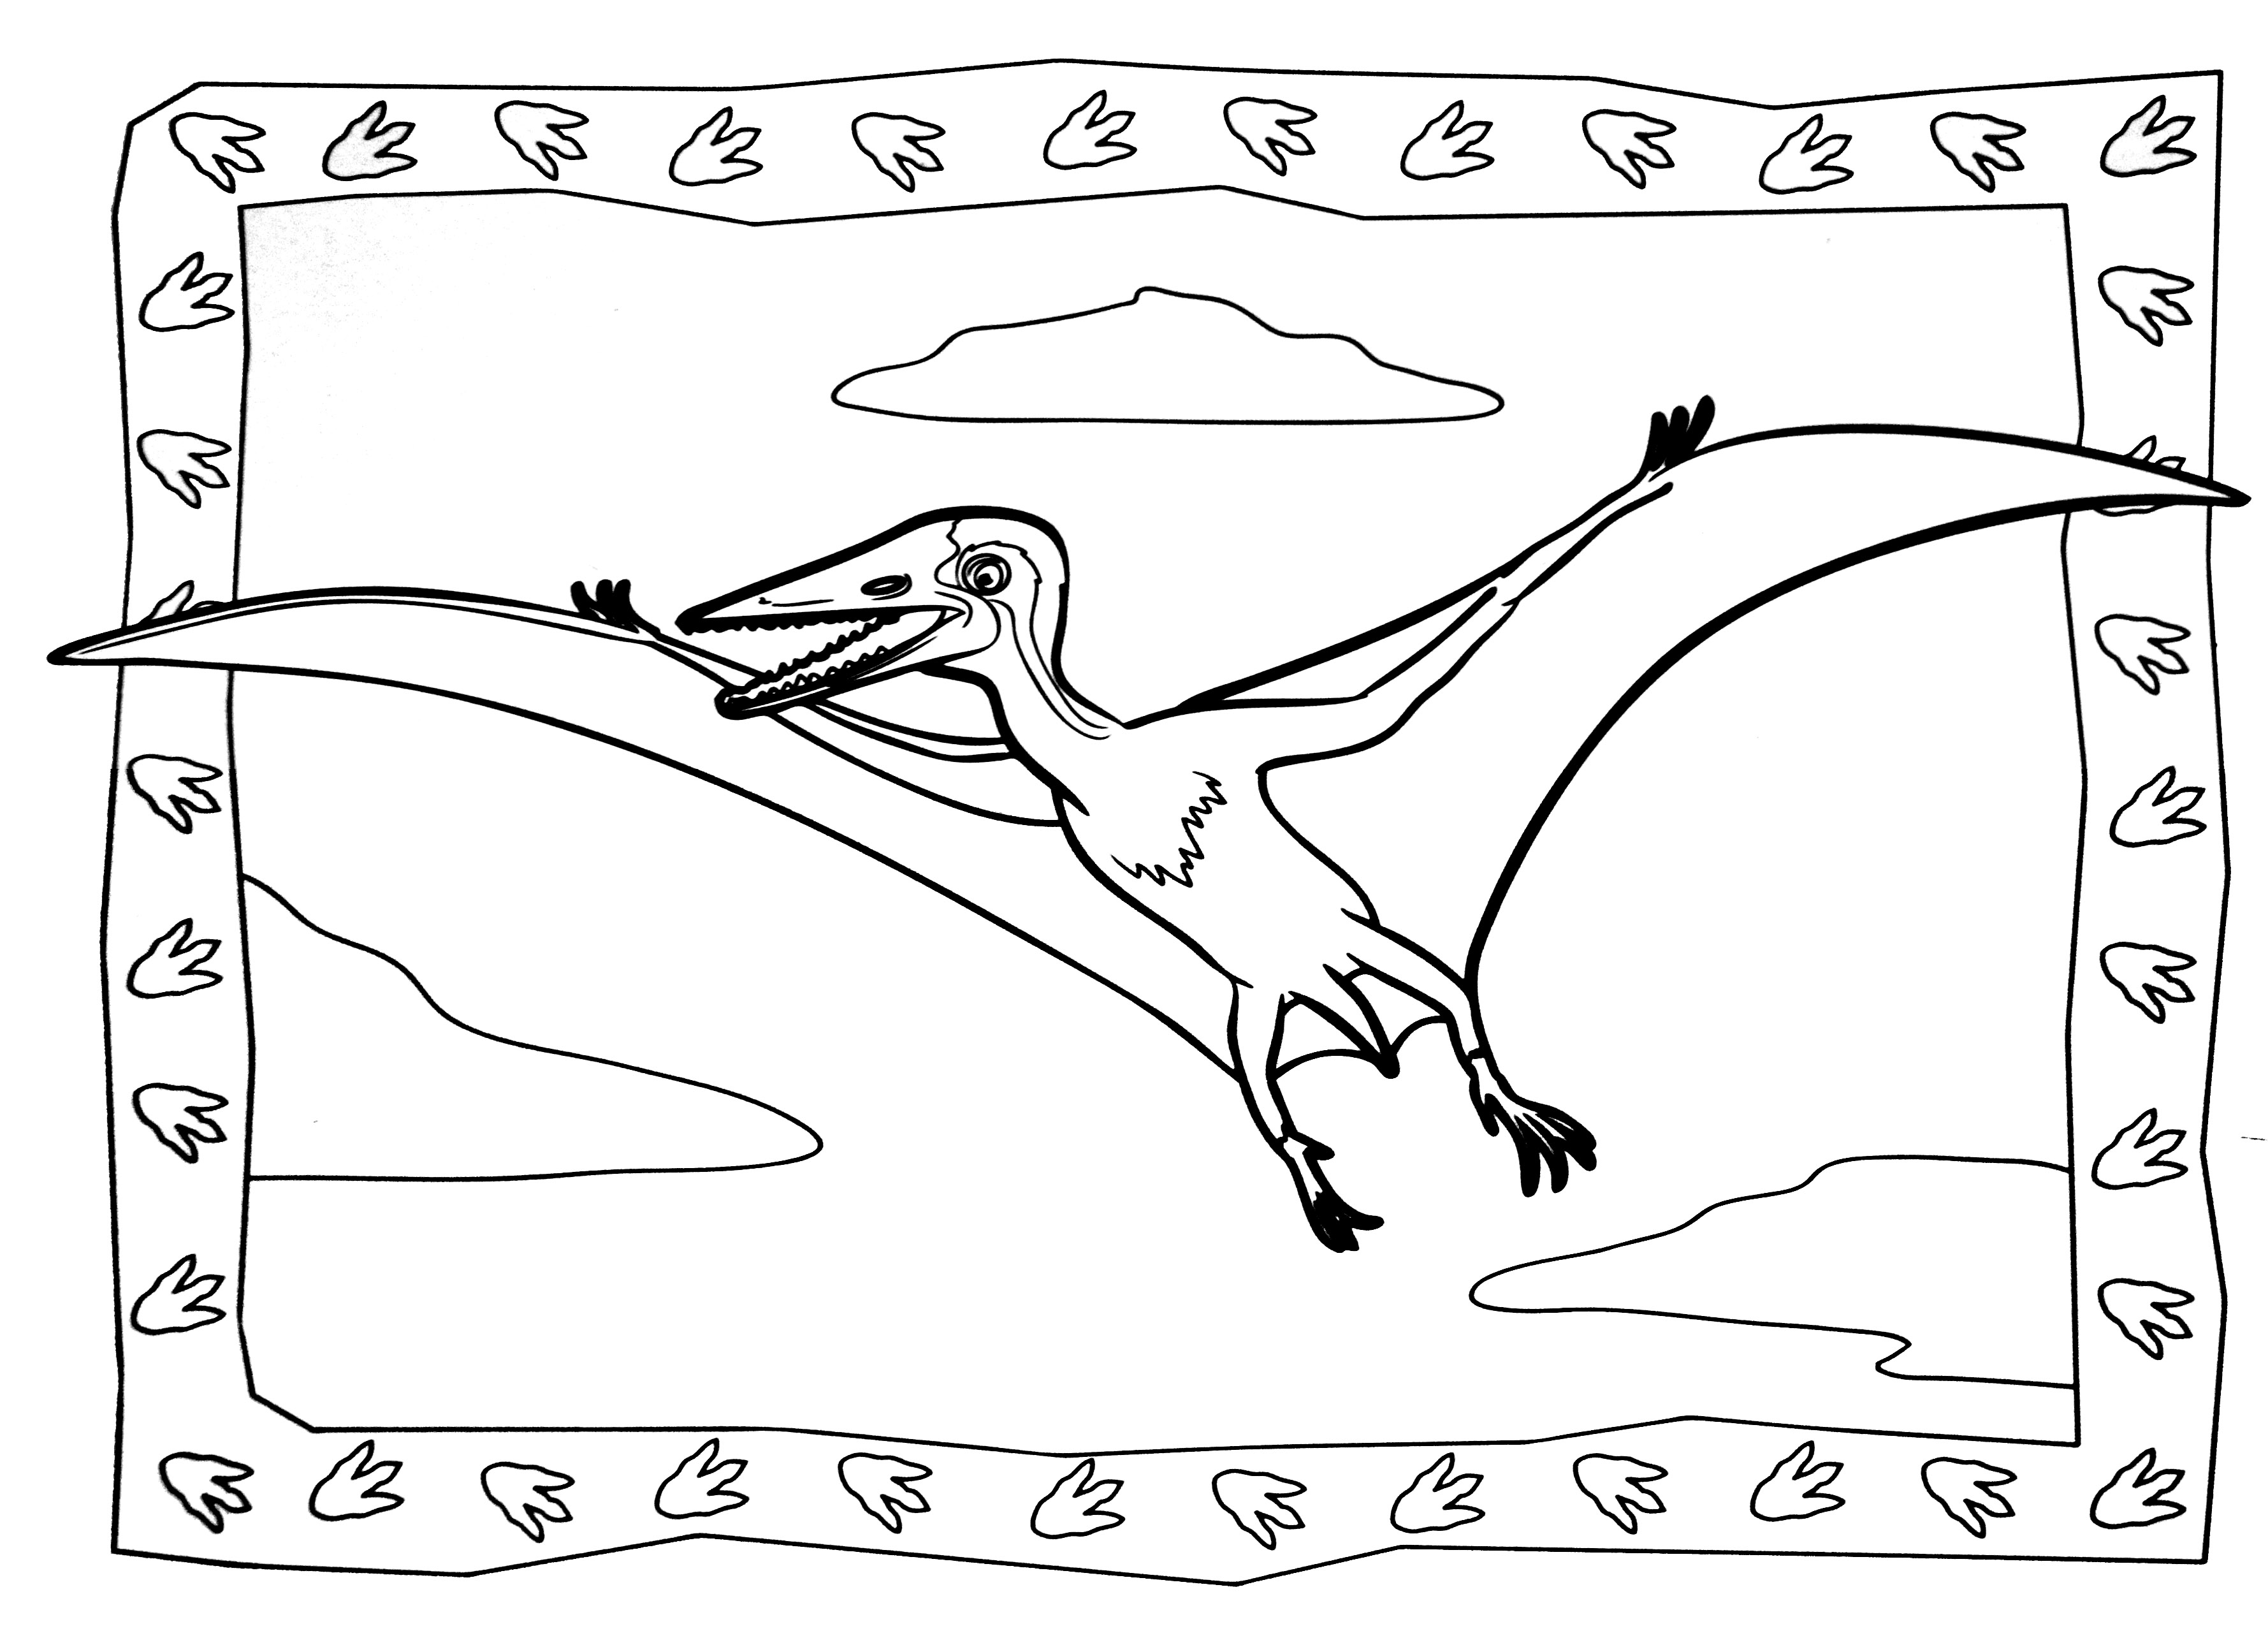 Páginas para colorear de dinosaurios para niños - Dinosaurios - Just Color  Niños : Dibujos para colorear para niños